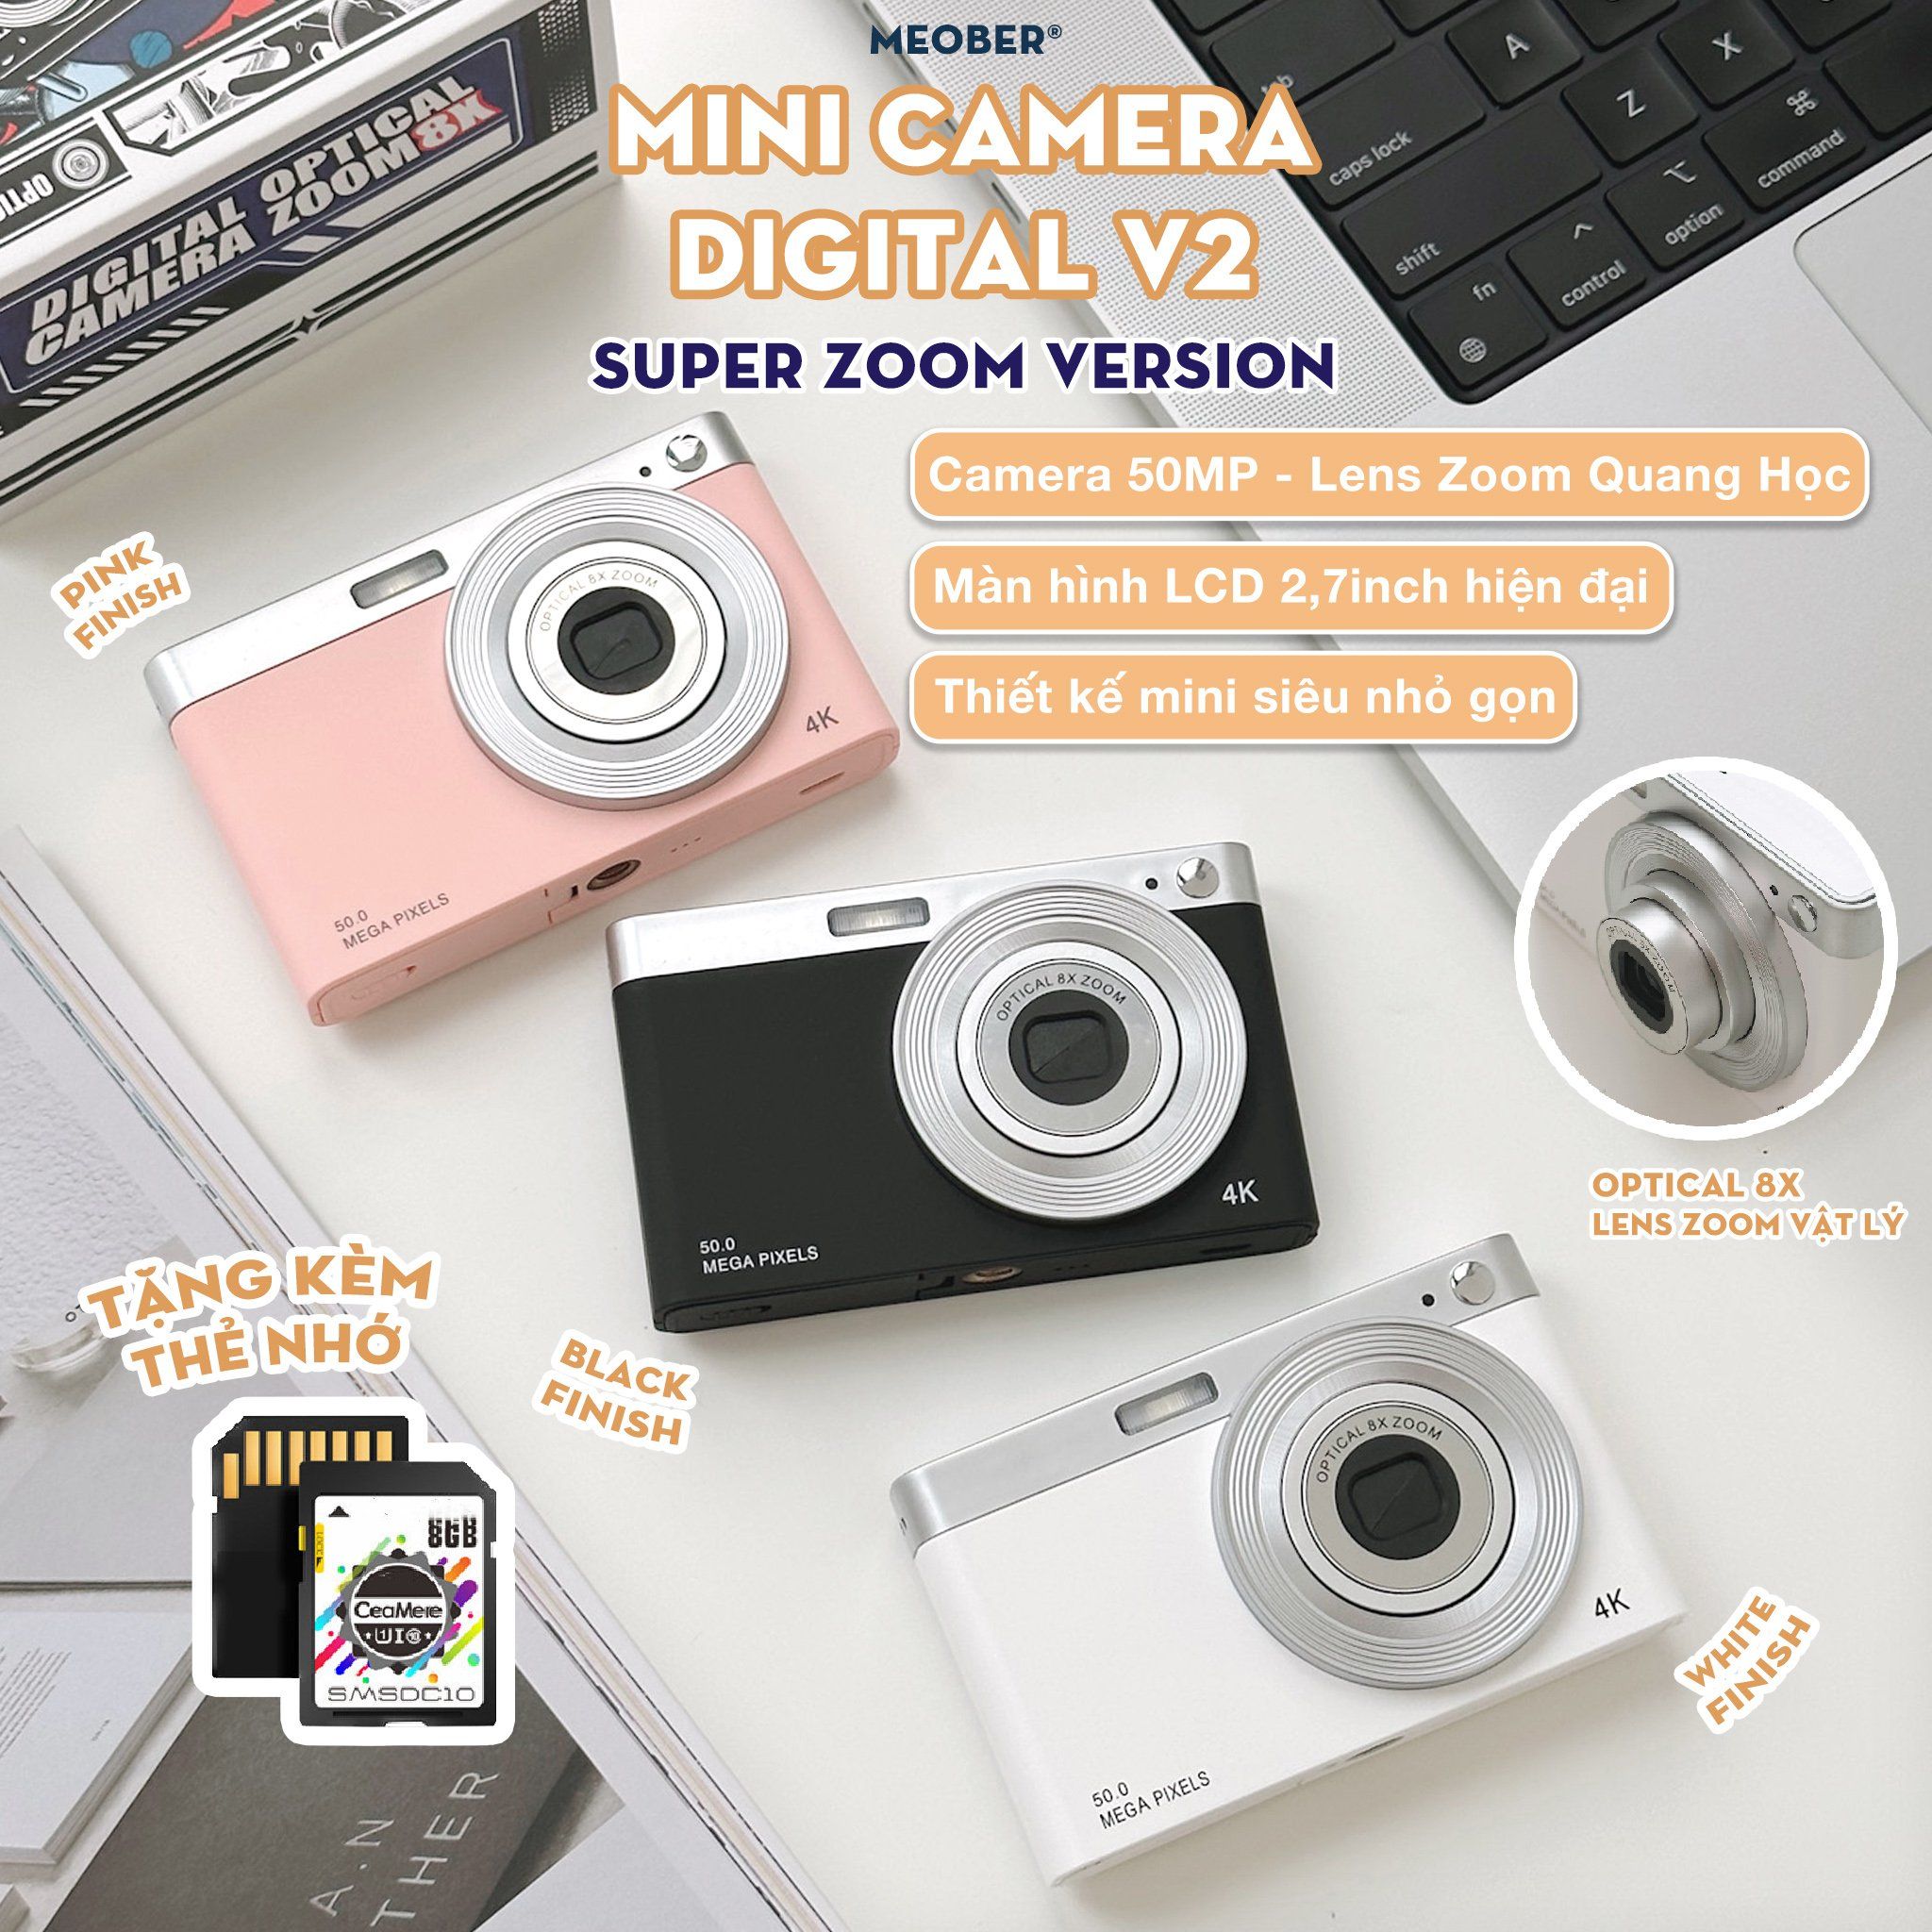  [Tặng thẻ nhớ] Máy Chụp hình mini digital v2 50MP Super Zoom, quay phim 4K, zoom quang học , quay video slow-mo, chuyển hình qua smartphone 